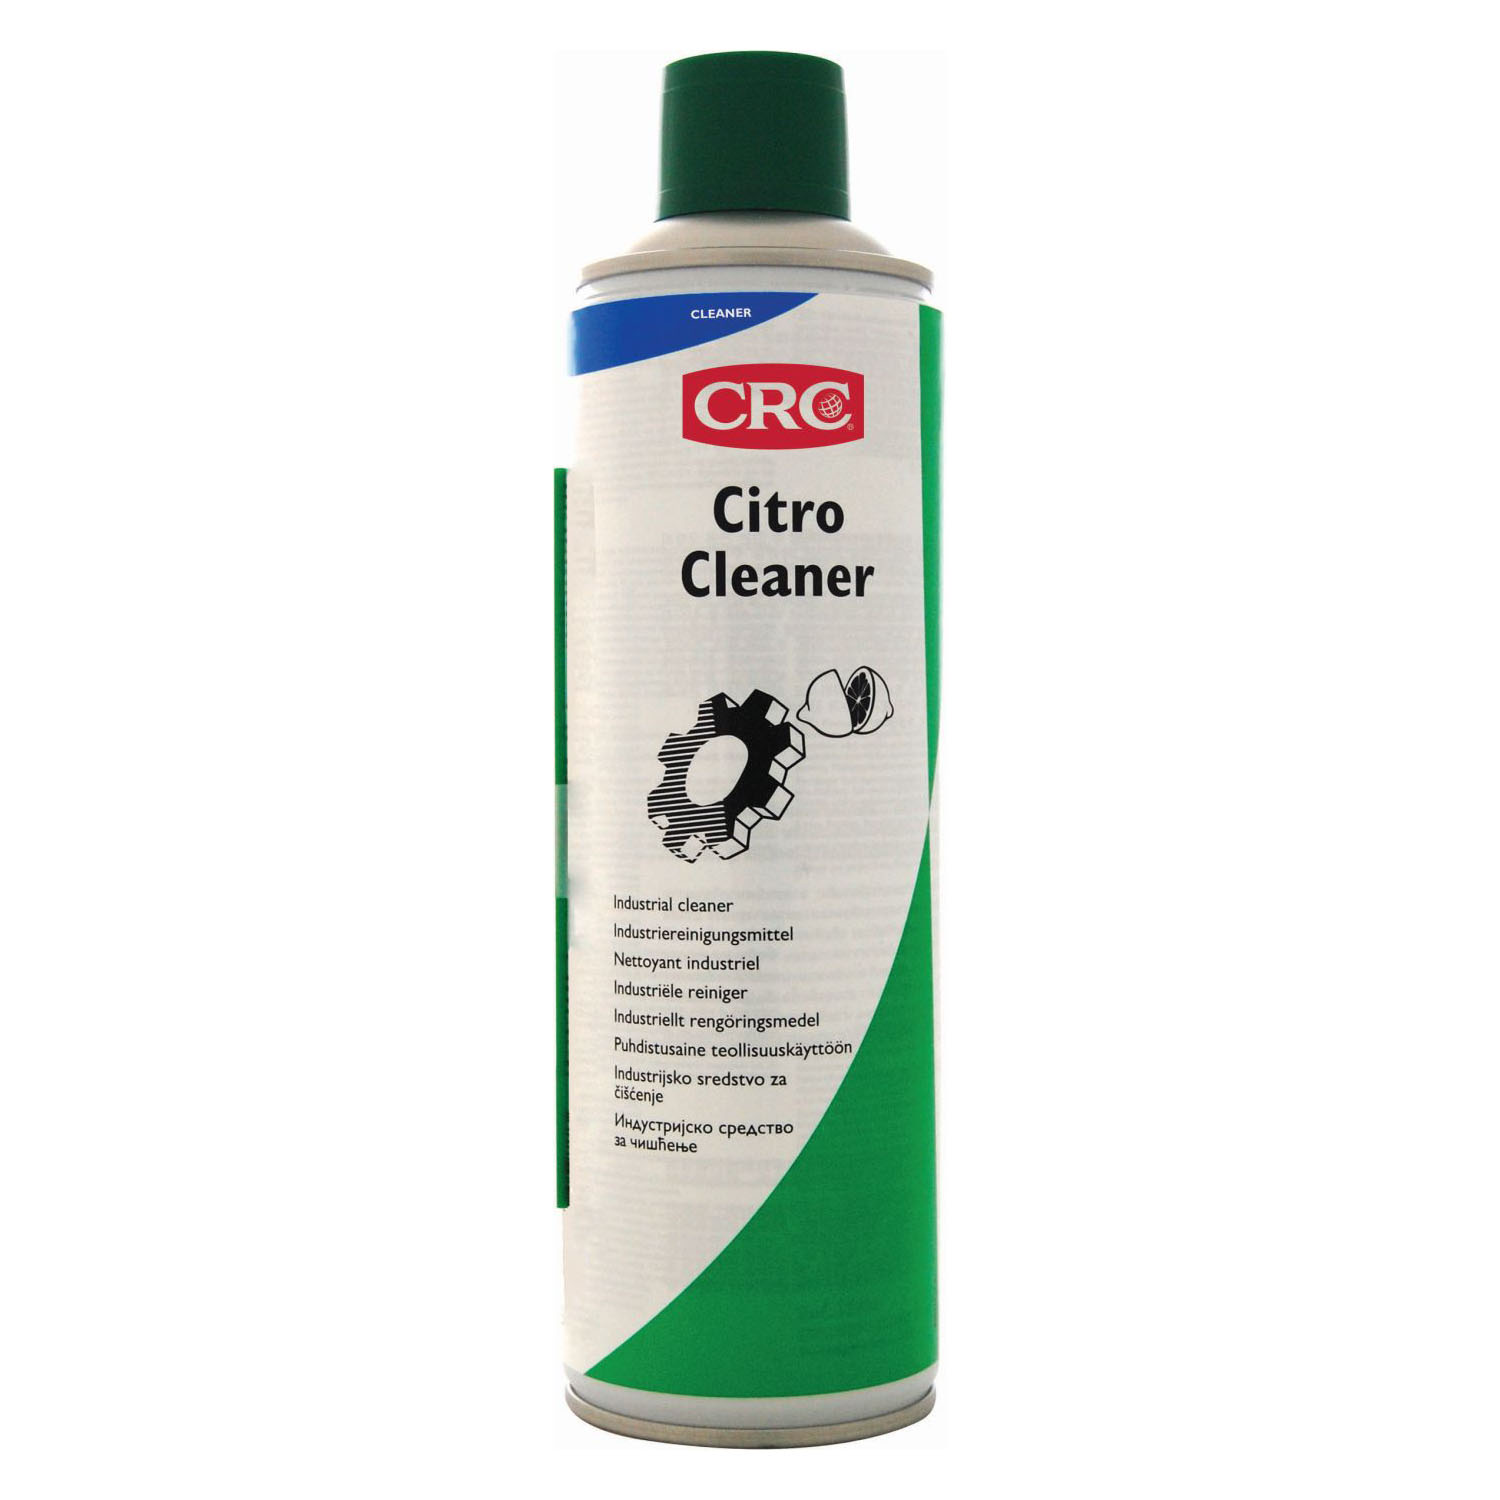 CRC Citro Cleaner Citrusreiniger 